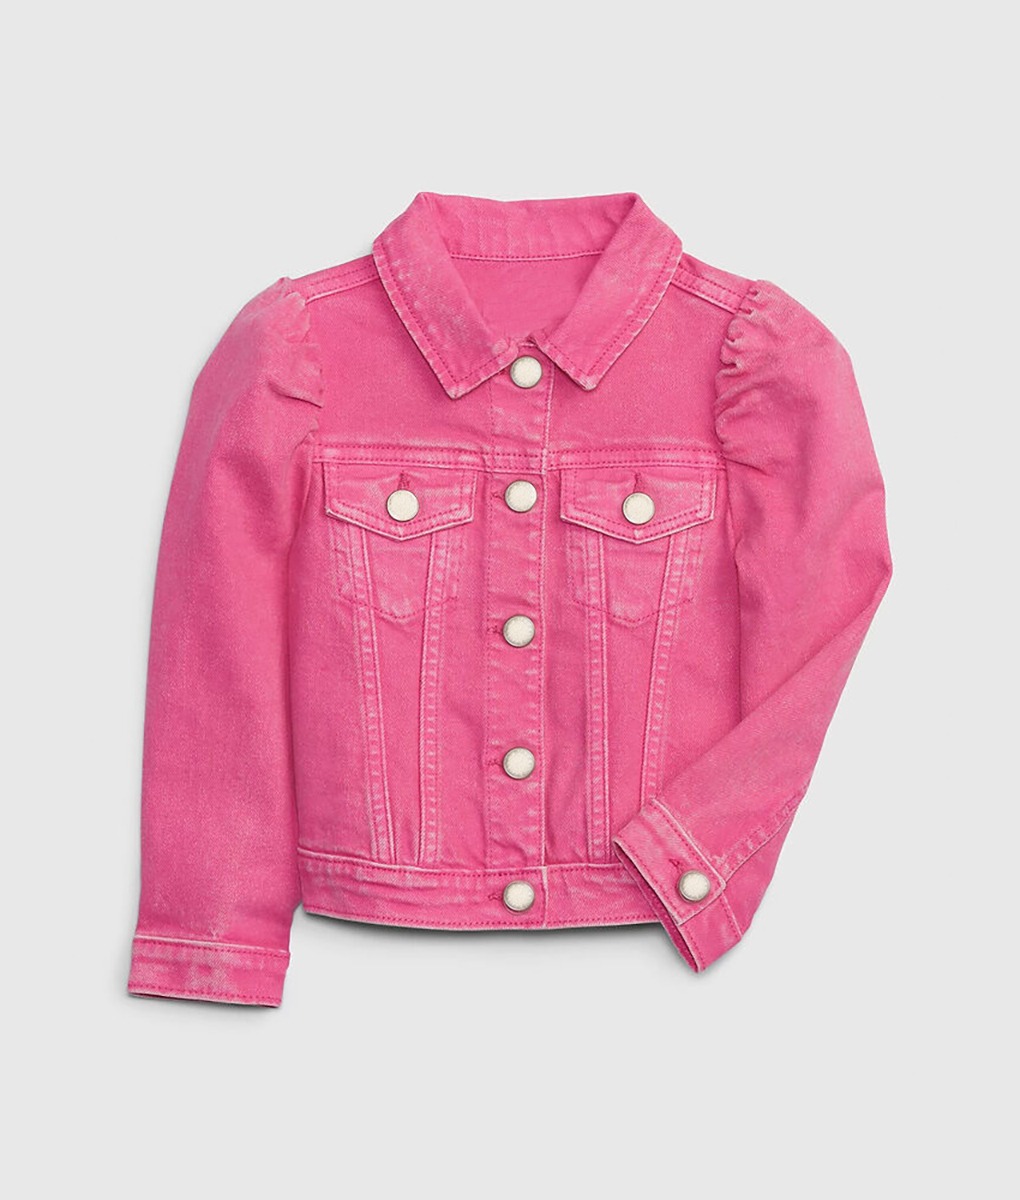 Barbie Puff Sleeves Pink Denim Jacket